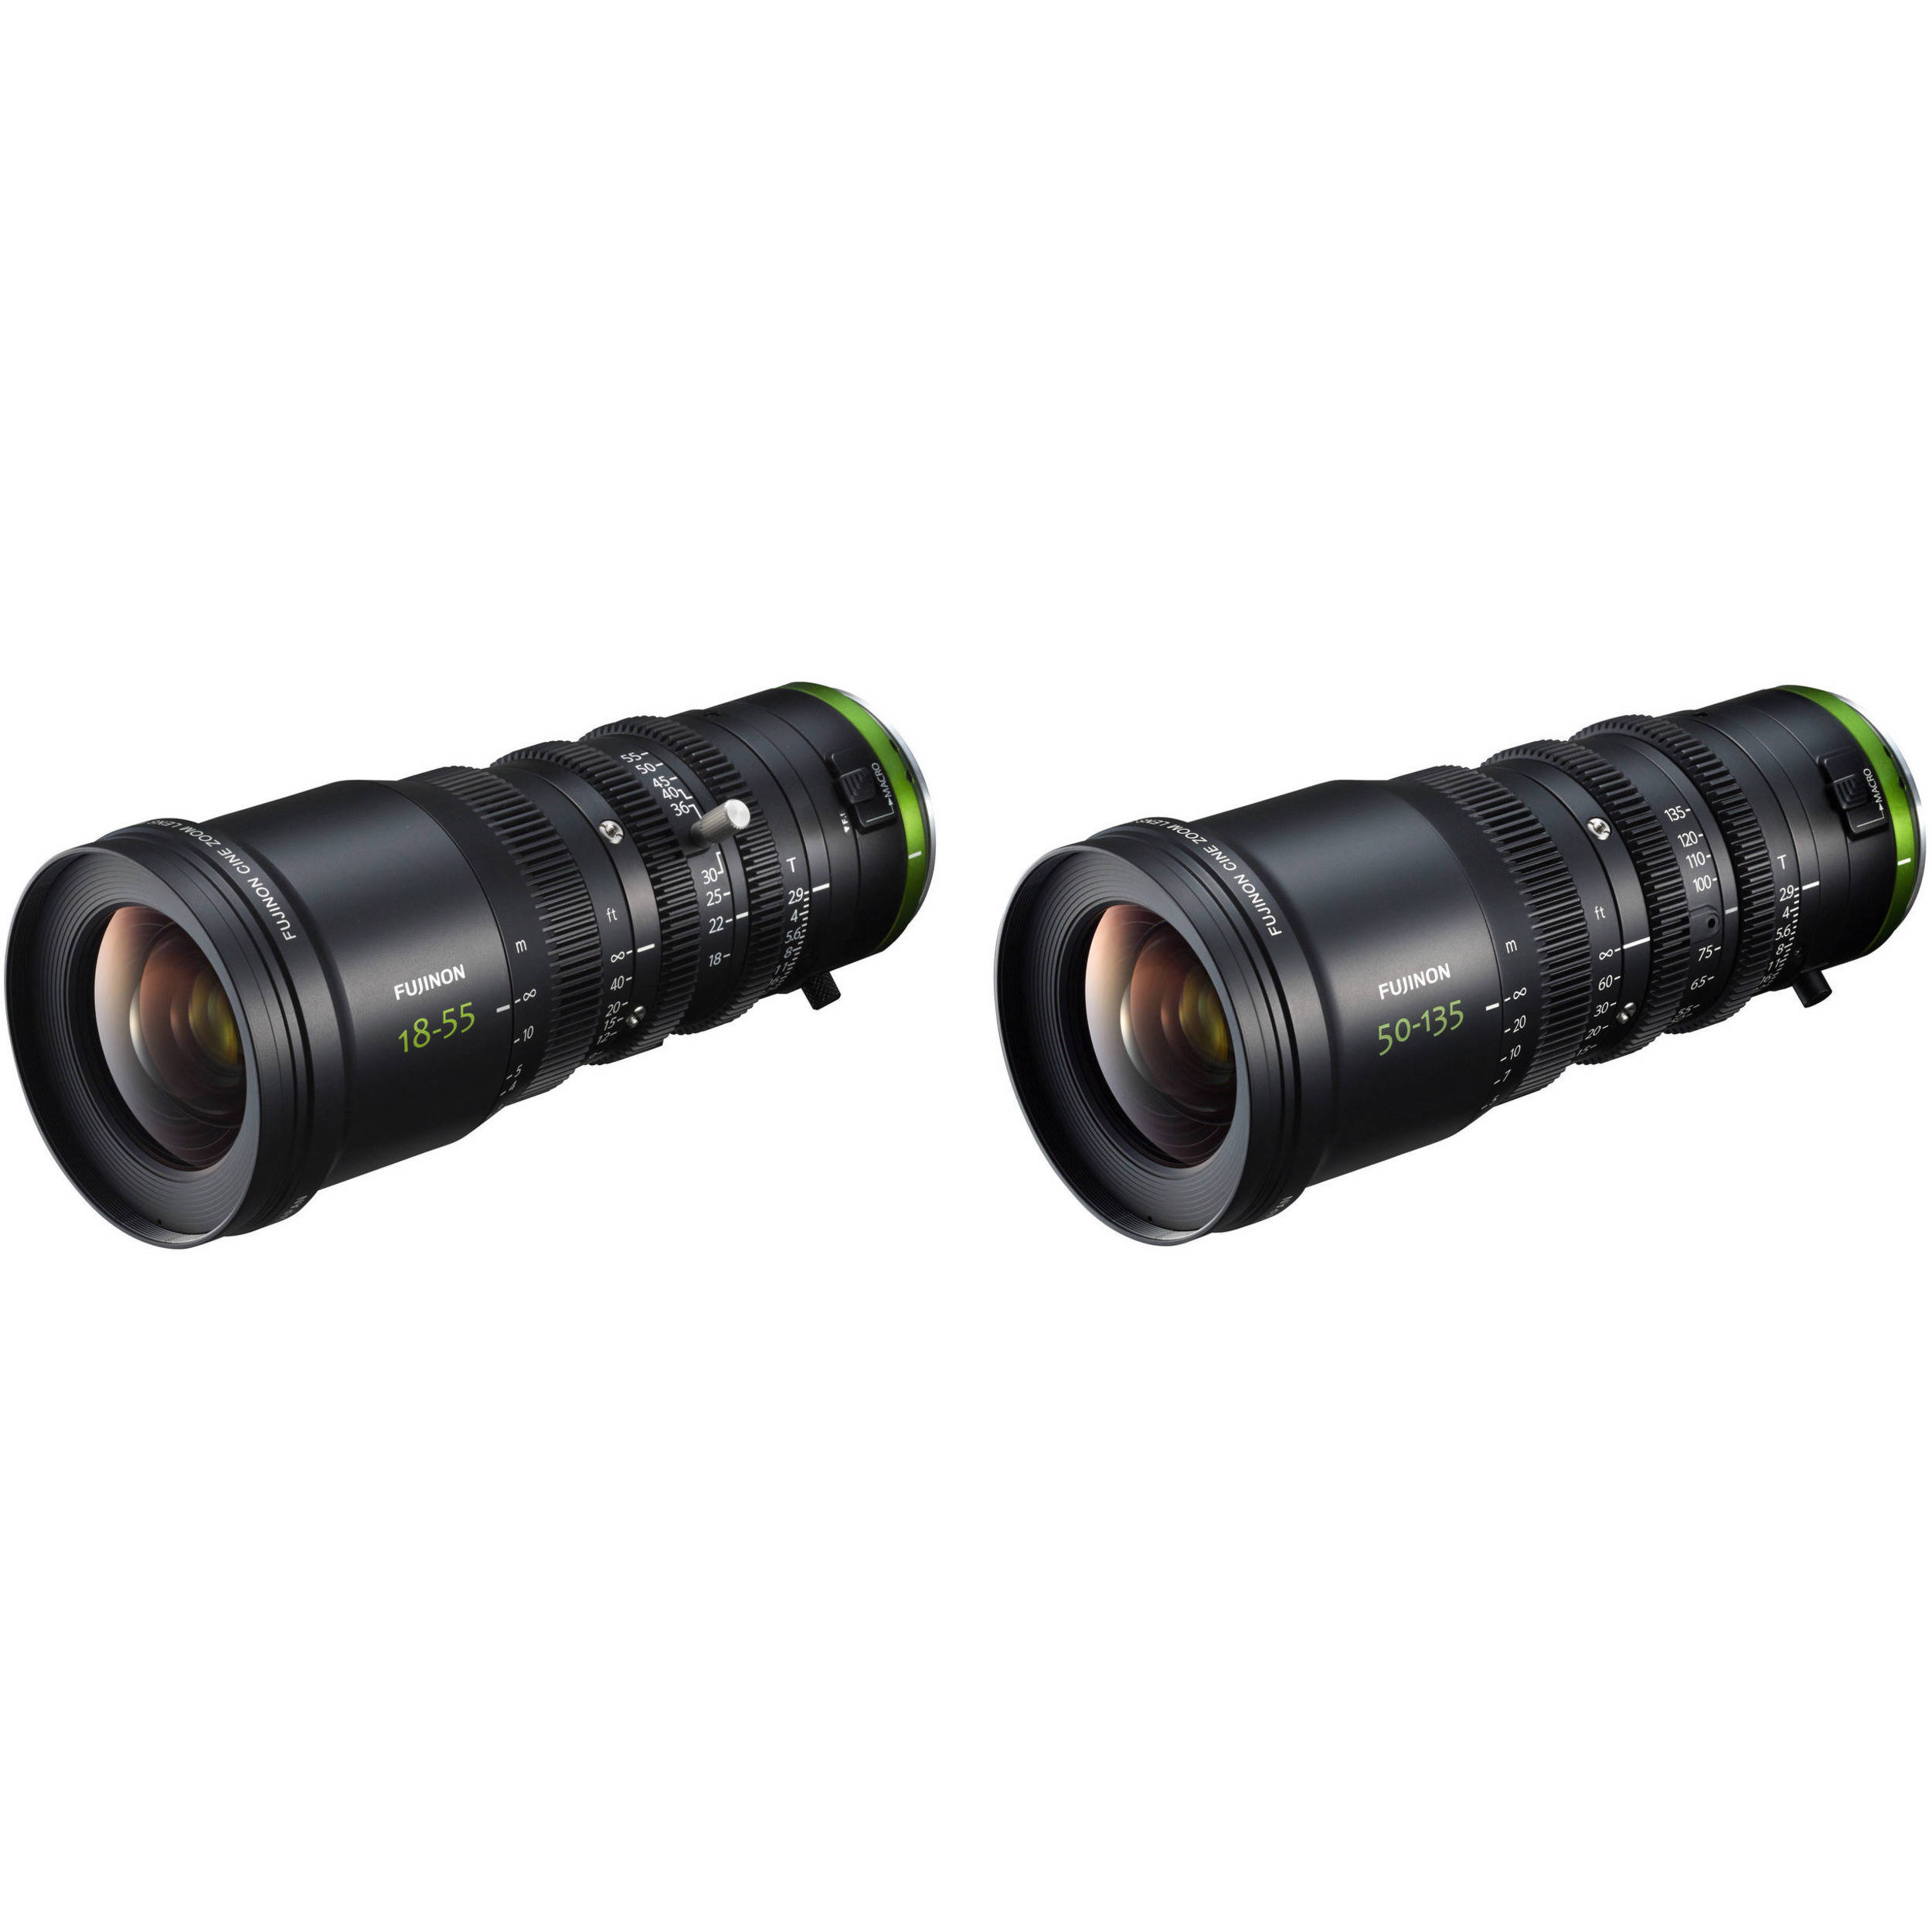 Fujinon Mk18 55mm And Mk50 135mm T2 9 Mft Mount Zoom Lens Bundle